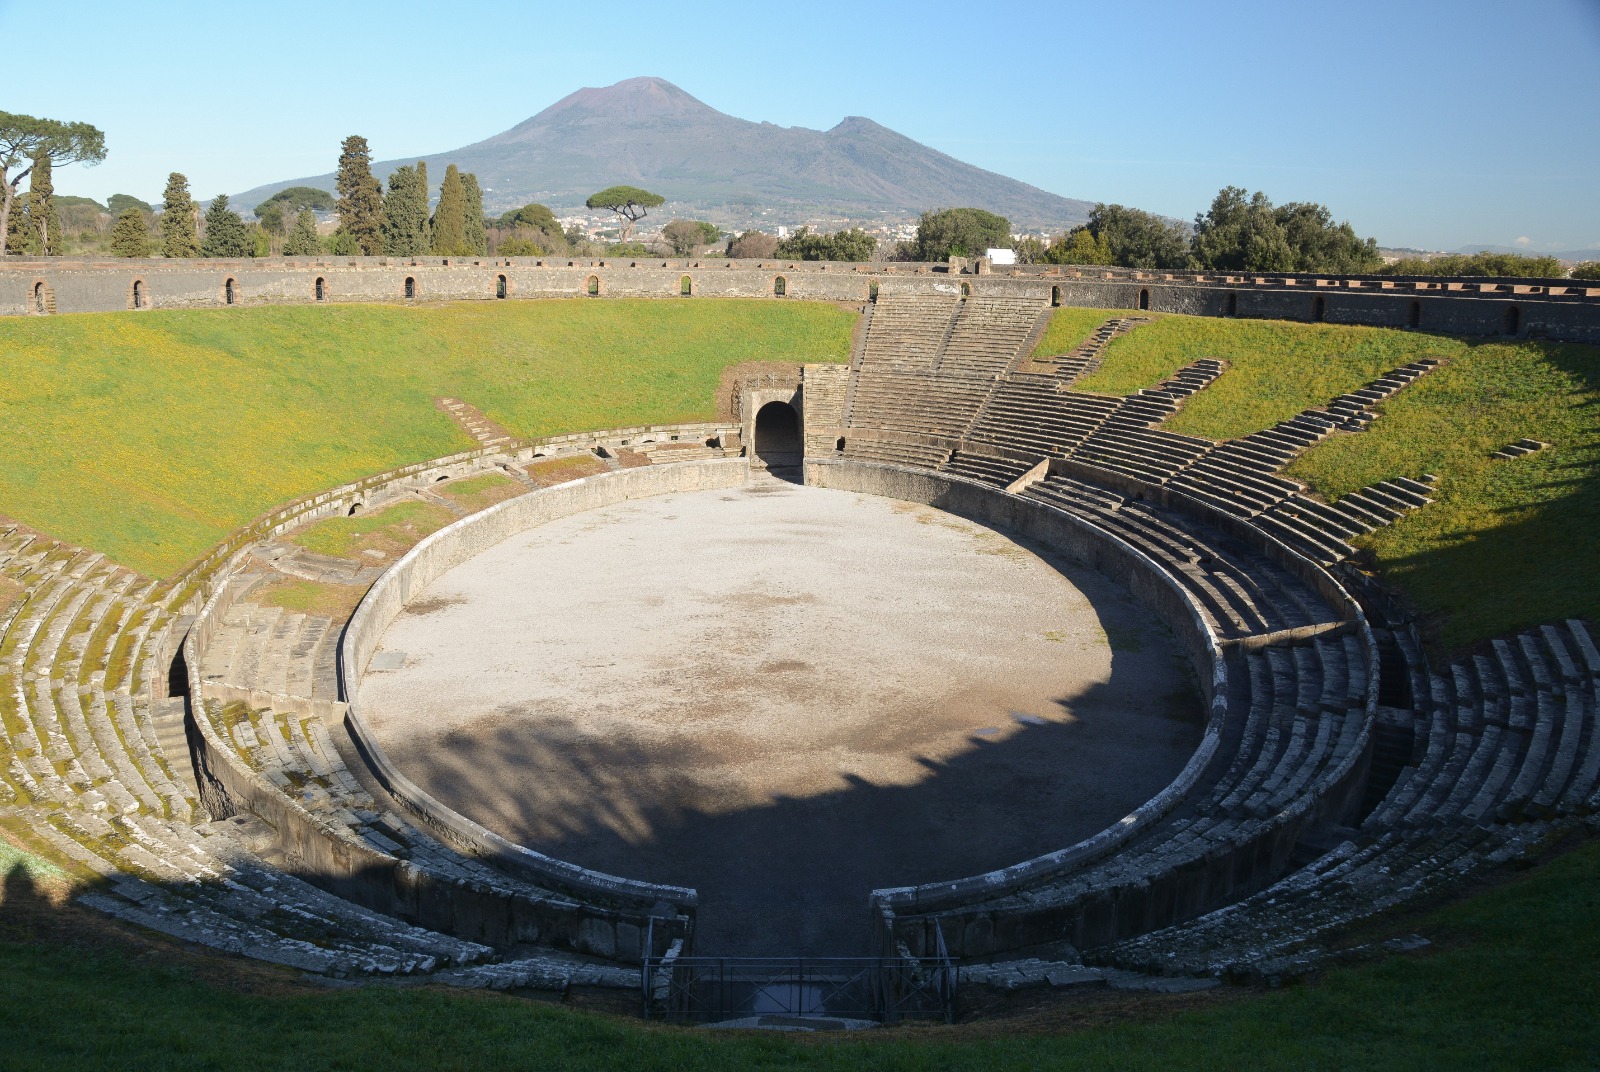 Pompei: all’Anfiteatro, ludi pompeiani tra gladiatori, legionari e Plinio il Vecchio